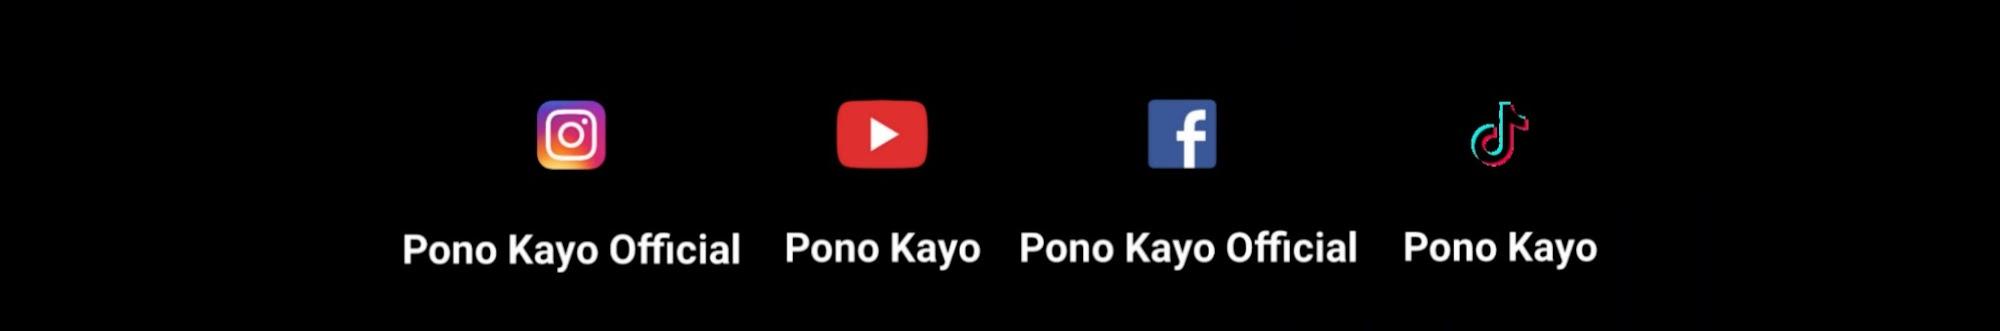 Pono Kayo